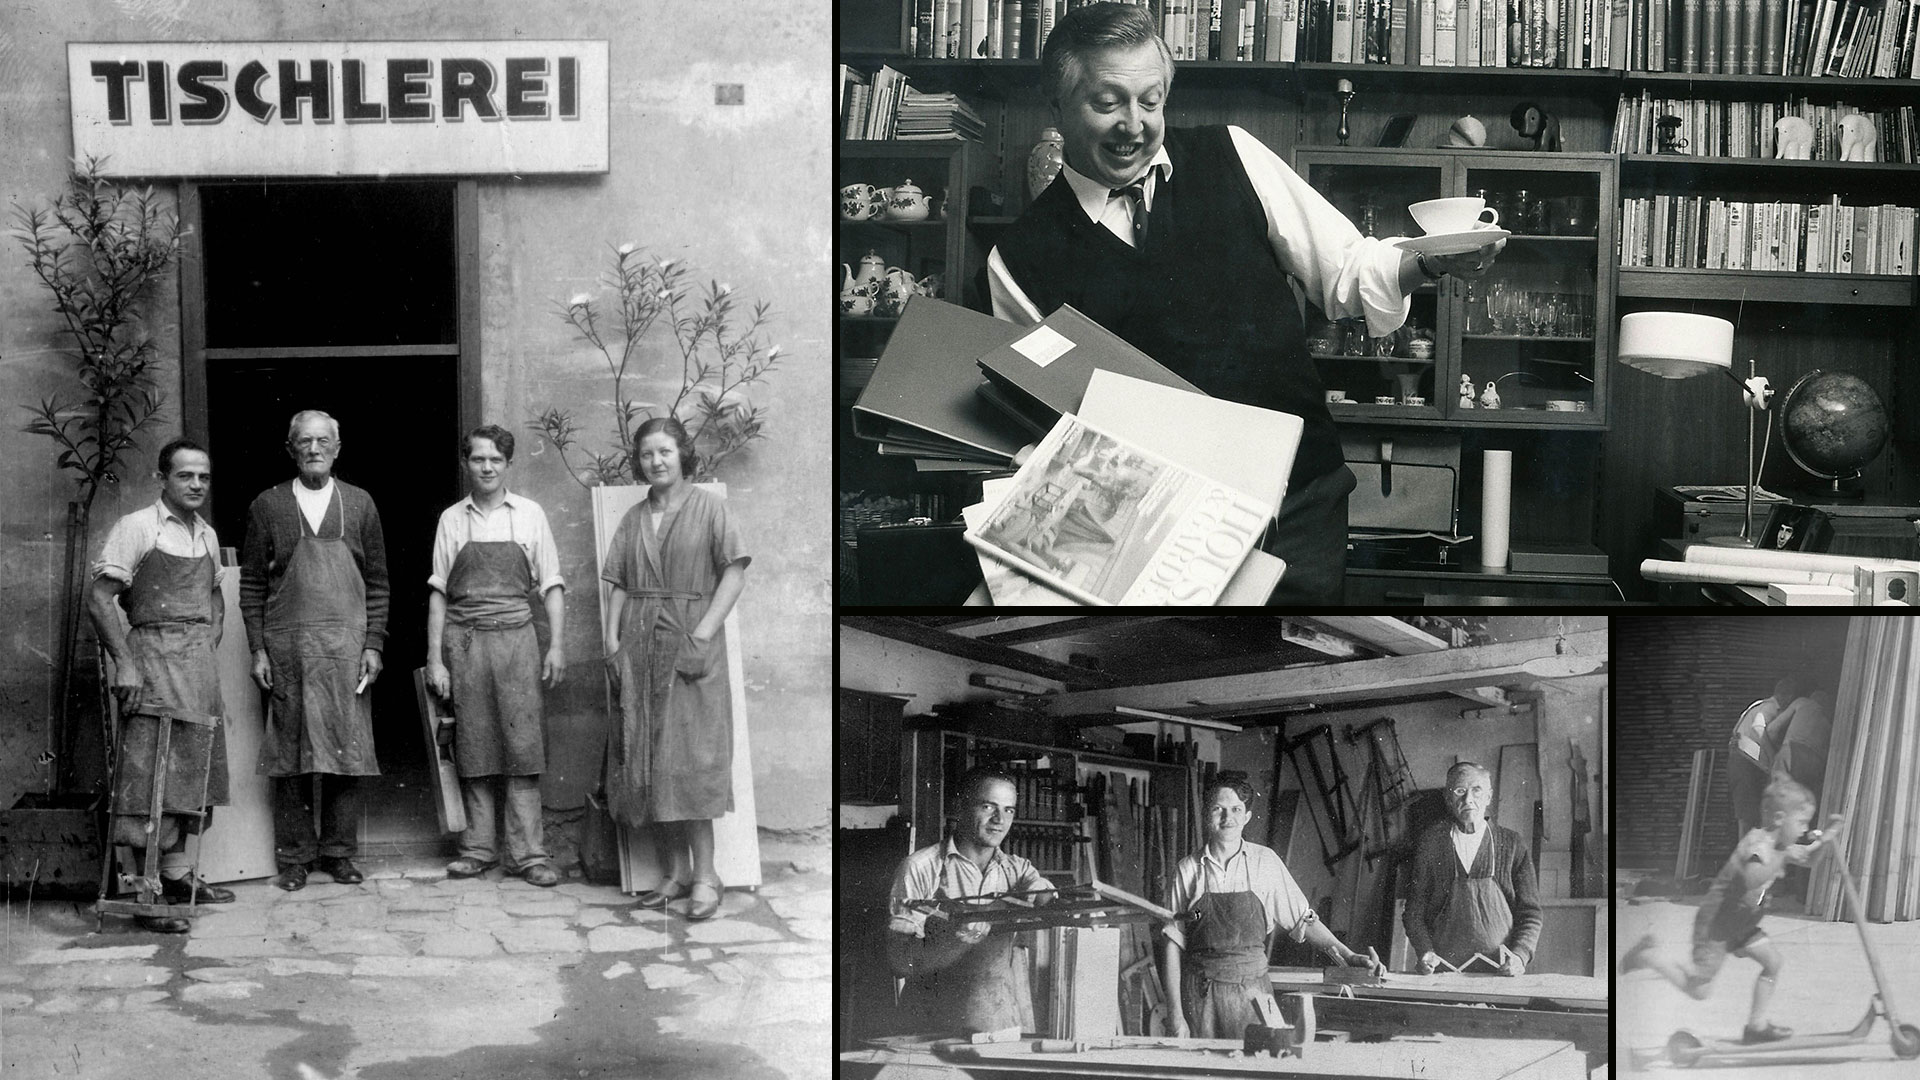 Bereits in dritter Generation besteht das Unternehmen Grünbeck Einrichtungen in Wien. Alles begann 1932 mit Hans Grünbeck, als er seine eigene Tischlerei gründetete. Heute ist Grünbeck ein Planungbüro für Innenarchitektur und Designhaus mit über 1100 m² Fläche. Noch heute werden individuelle Möbel nach Maß gefertigt.